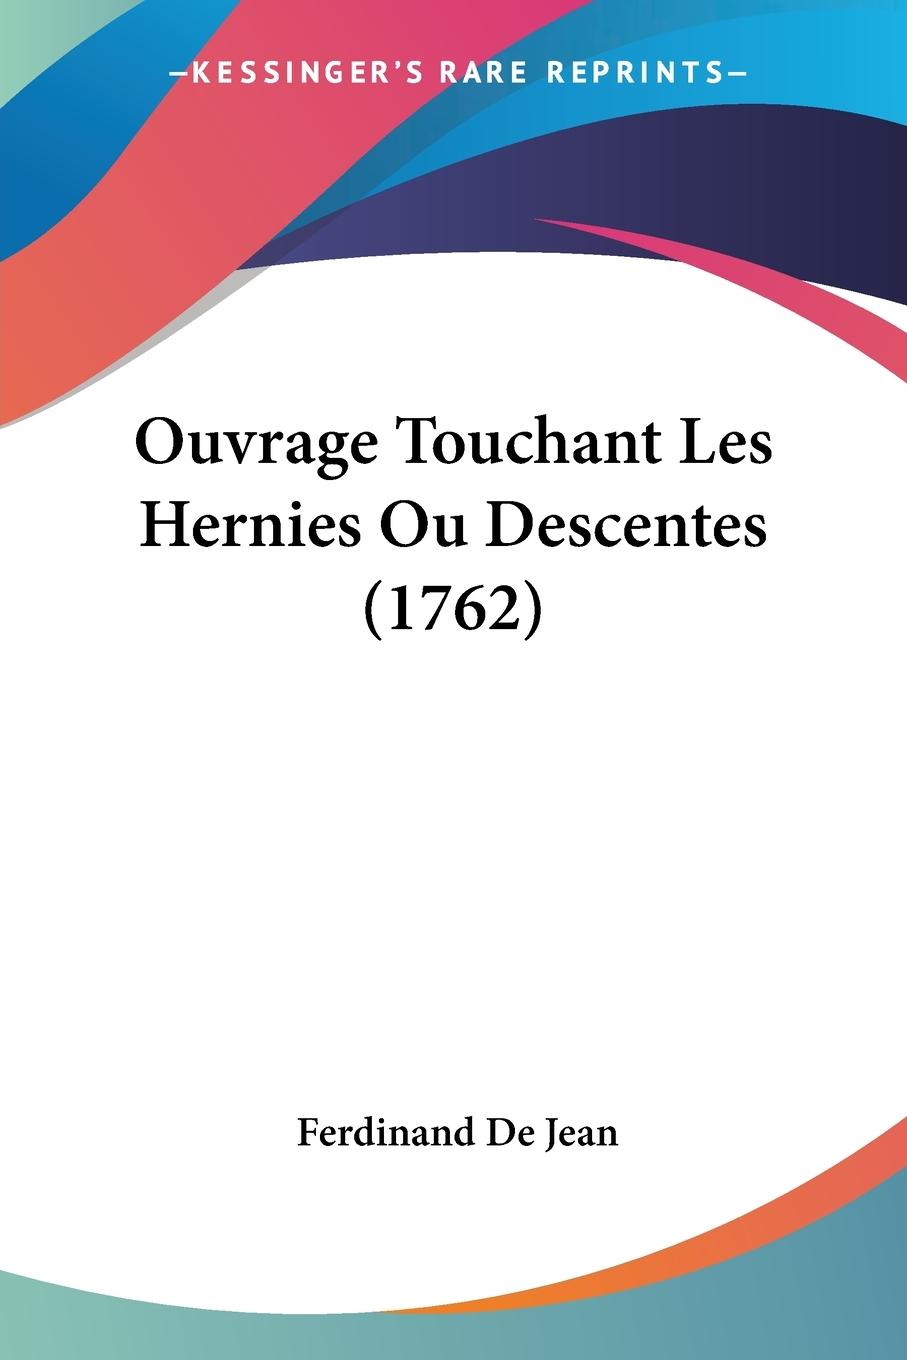 Ouvrage Touchant Les Hernies Ou Descentes (1762) - De Jean, Ferdinand